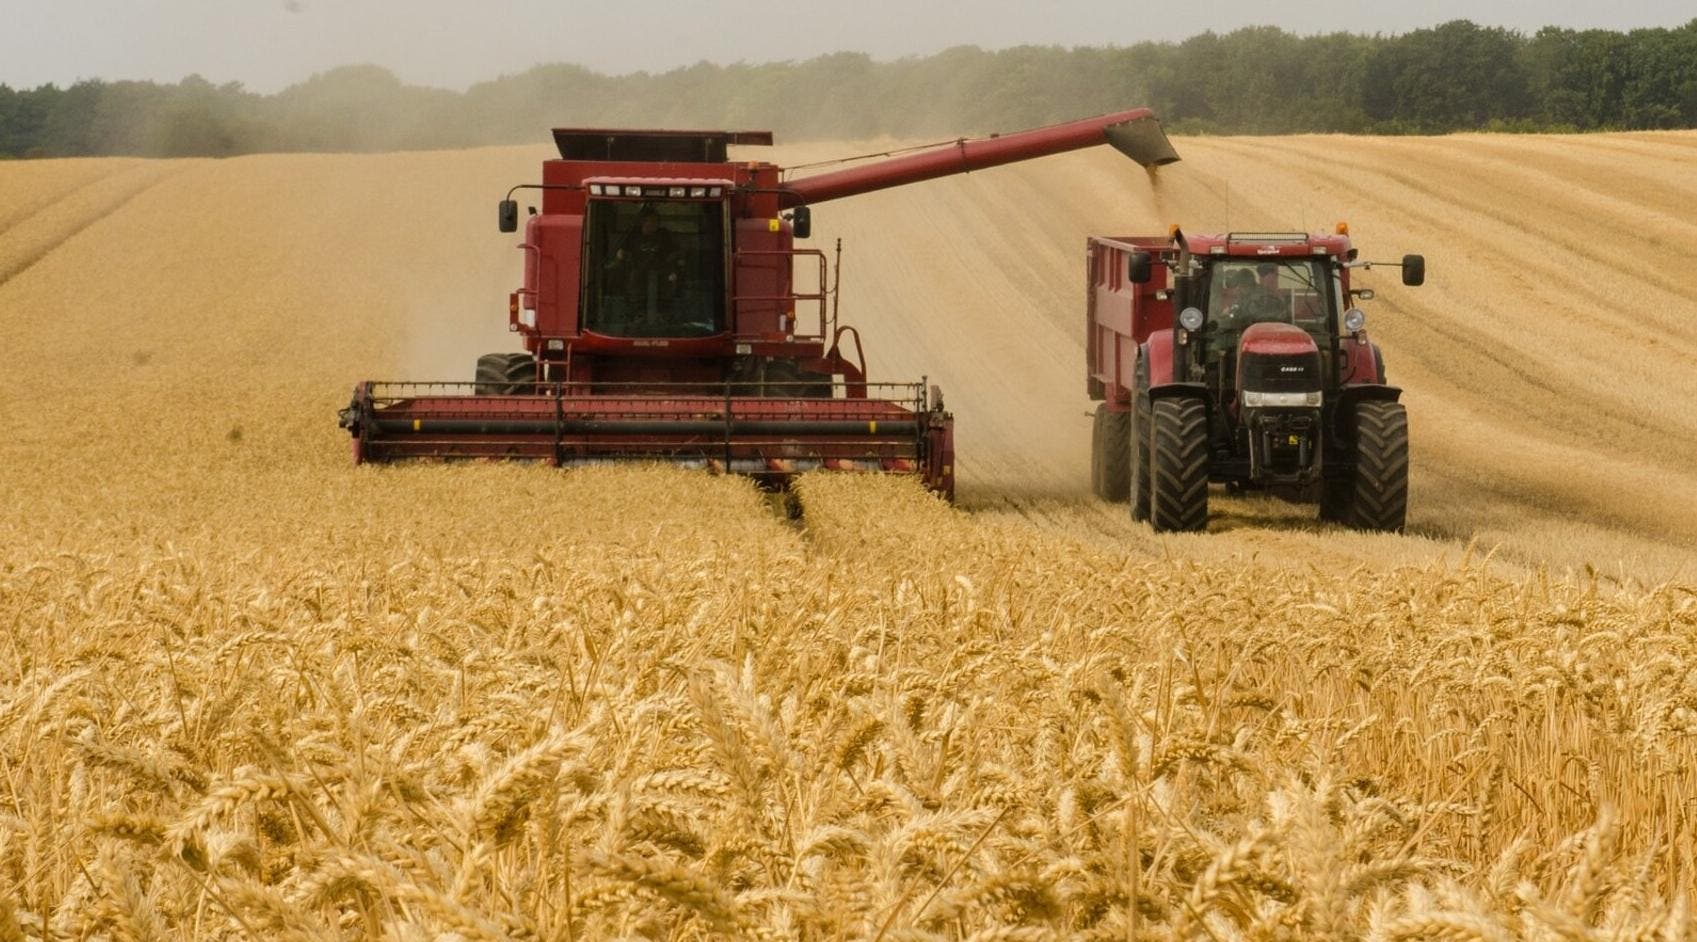 El Gobierno ruso prohíbe las exportaciones de cereales y azúcar